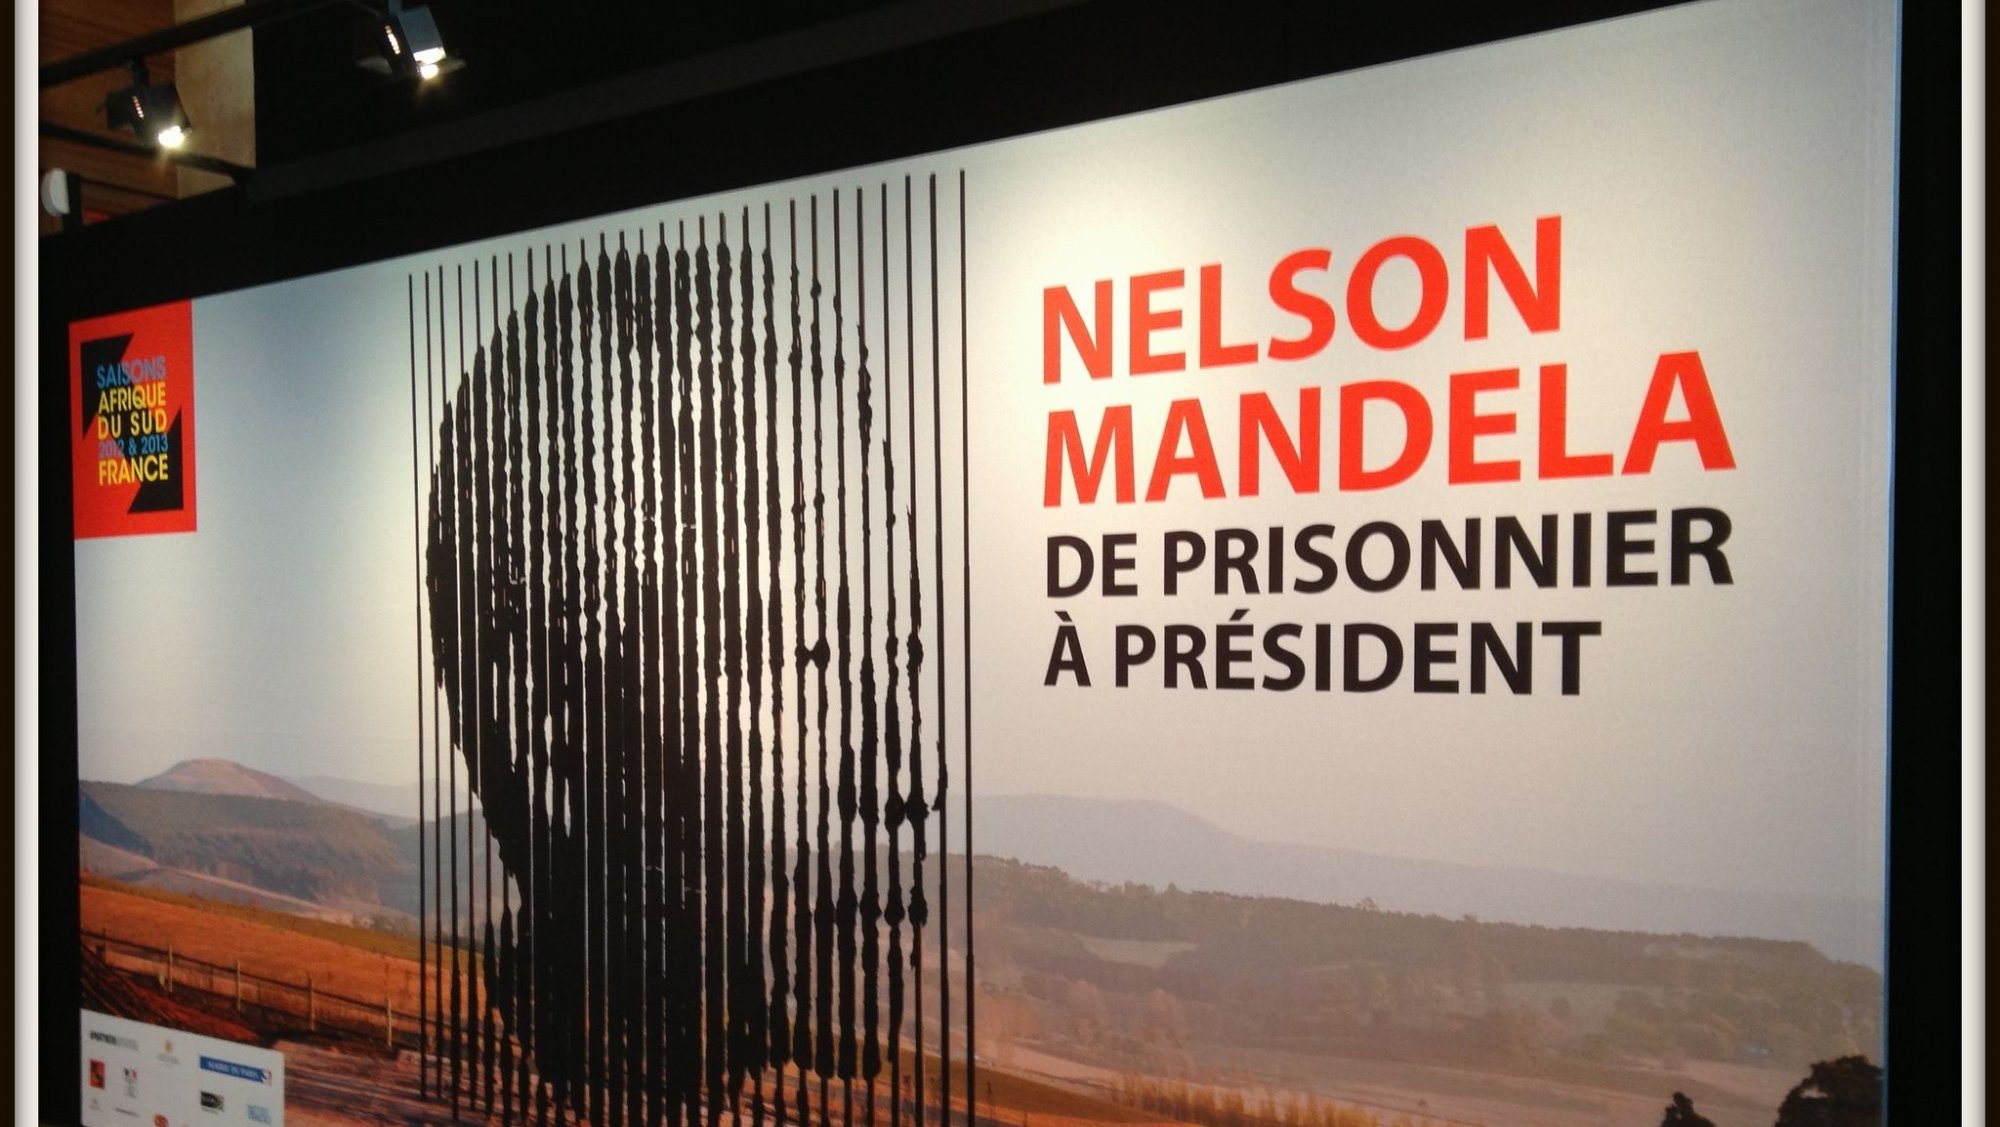 "Nelson Mandela, de prisonnier à président", la vie de Mandela racontée en photos
